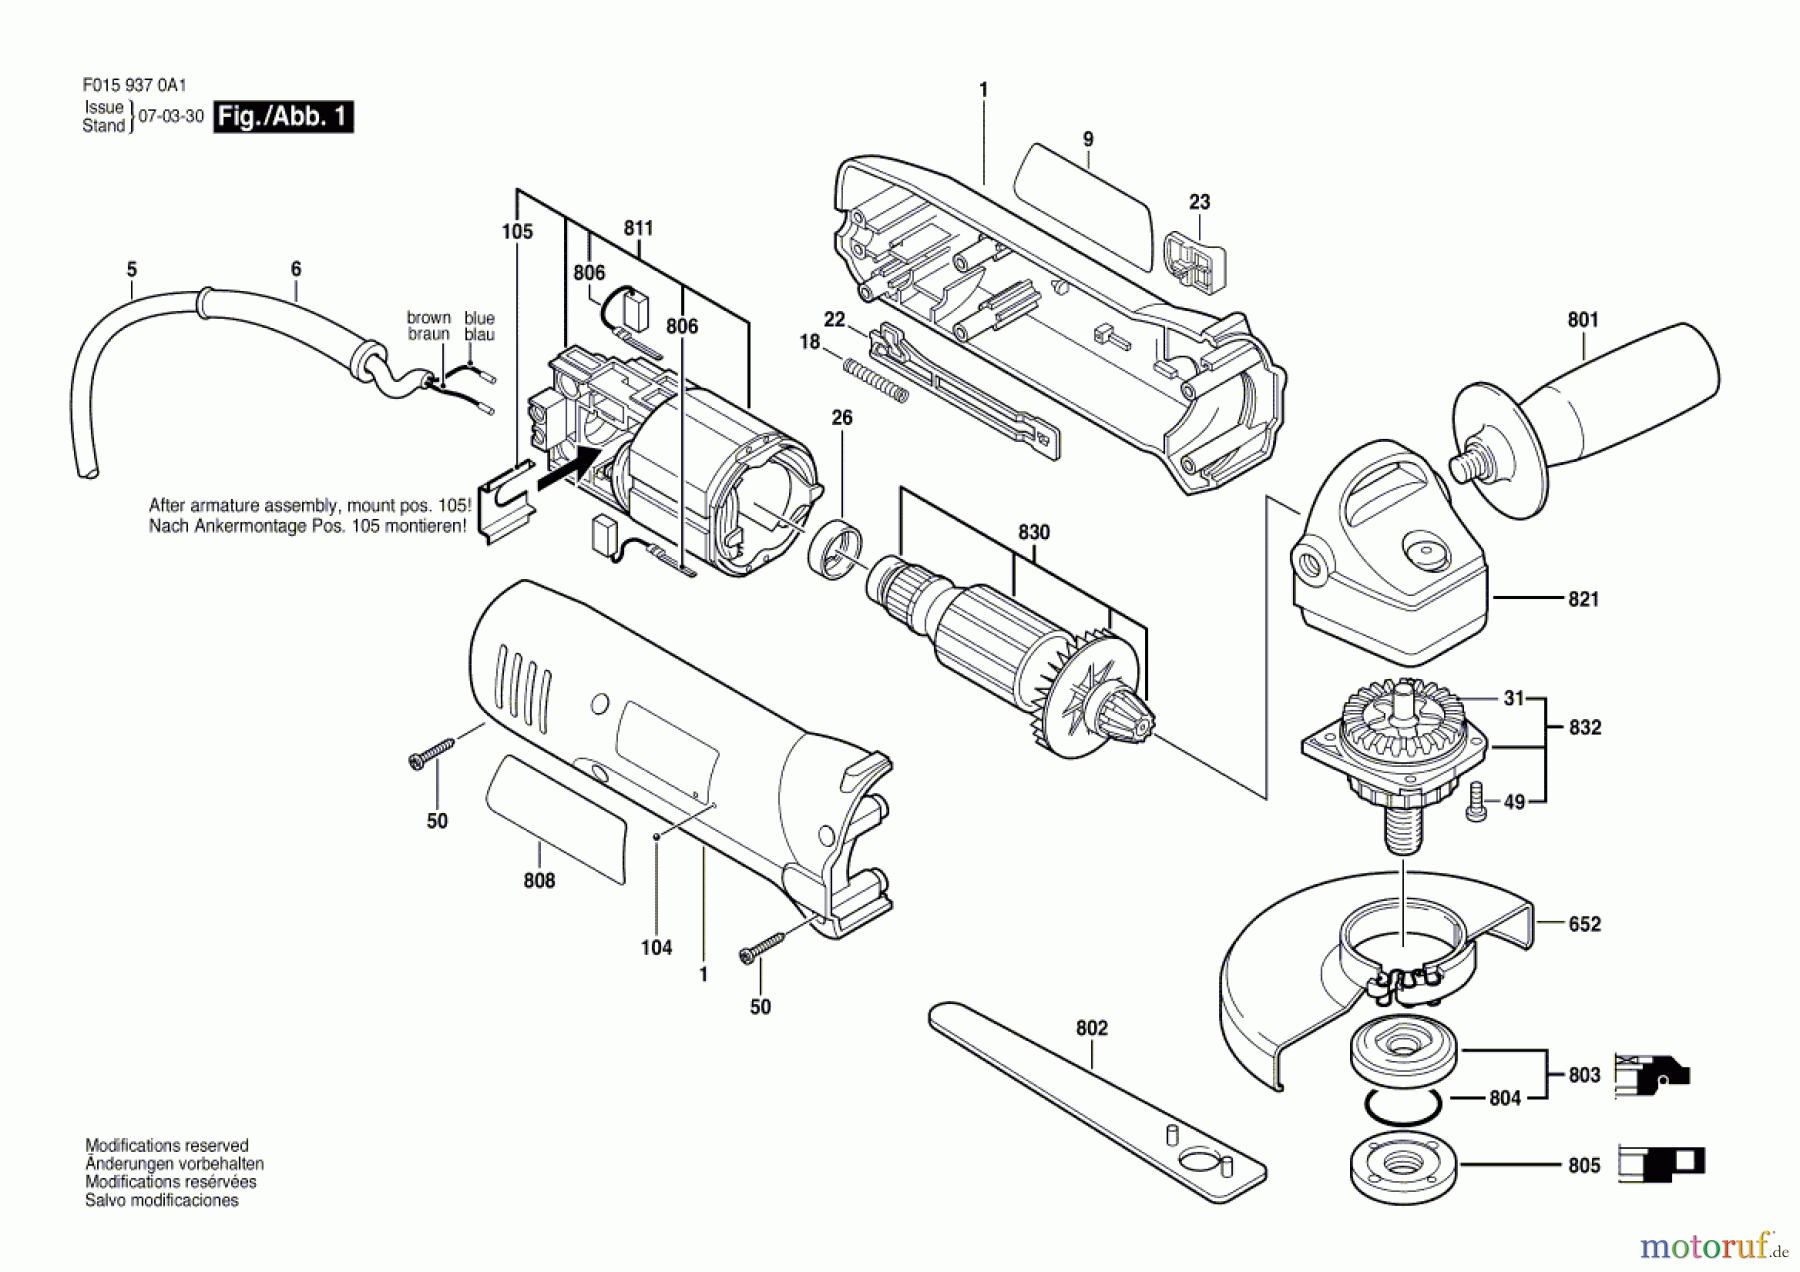  Bosch Werkzeug Winkelschleifer 9375 Seite 1